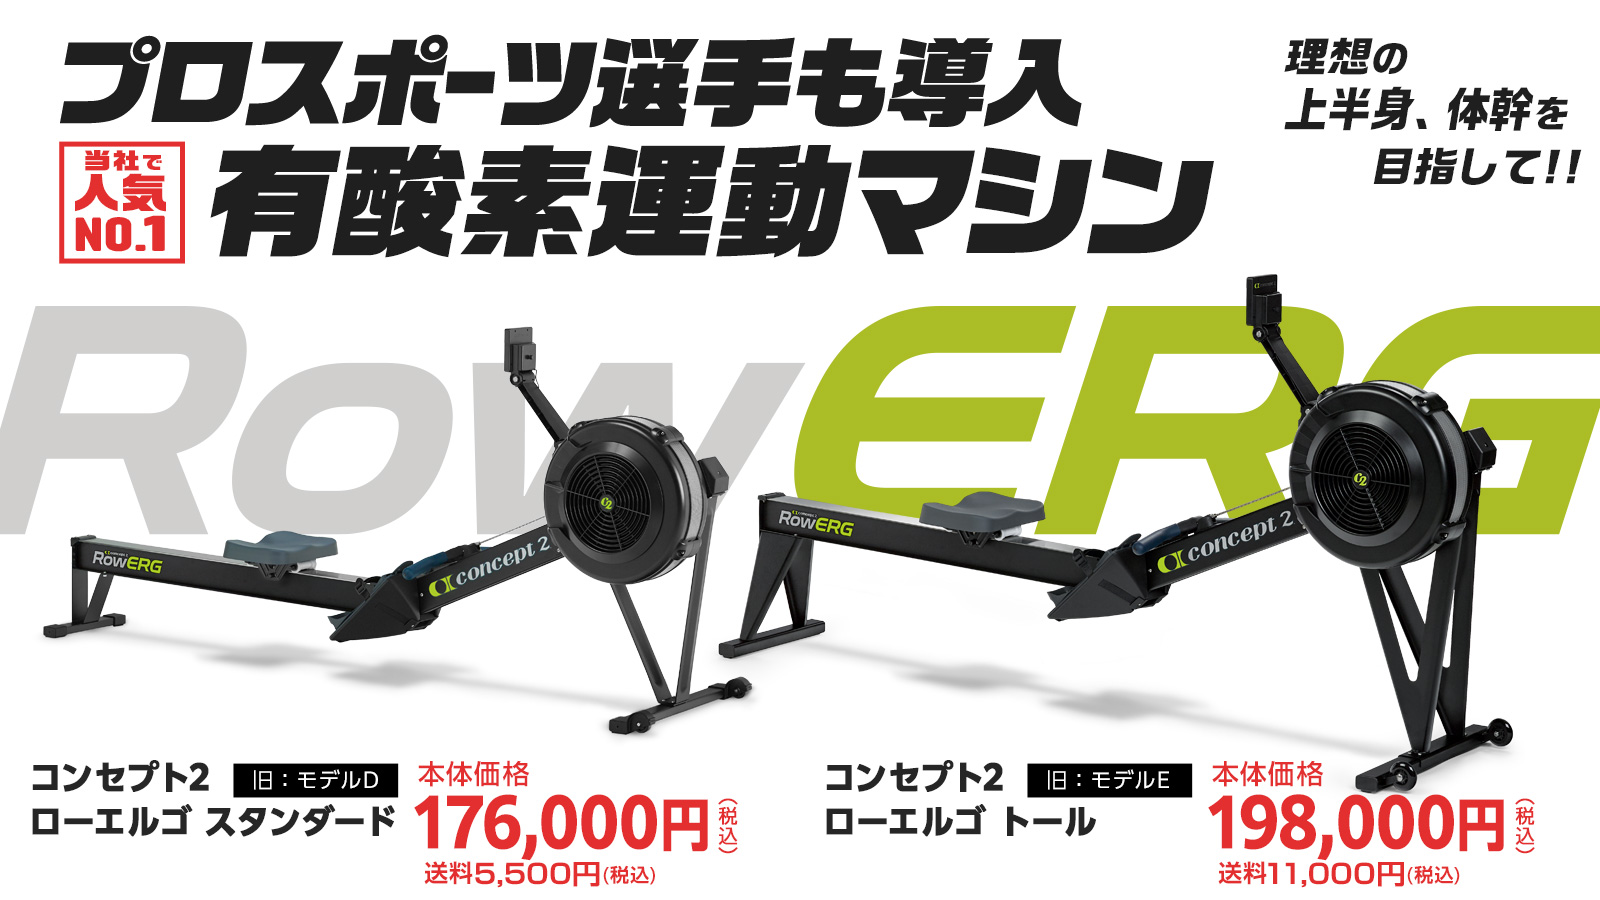 38,999円コンセプト2 ローイング エルゴメーター モデルD